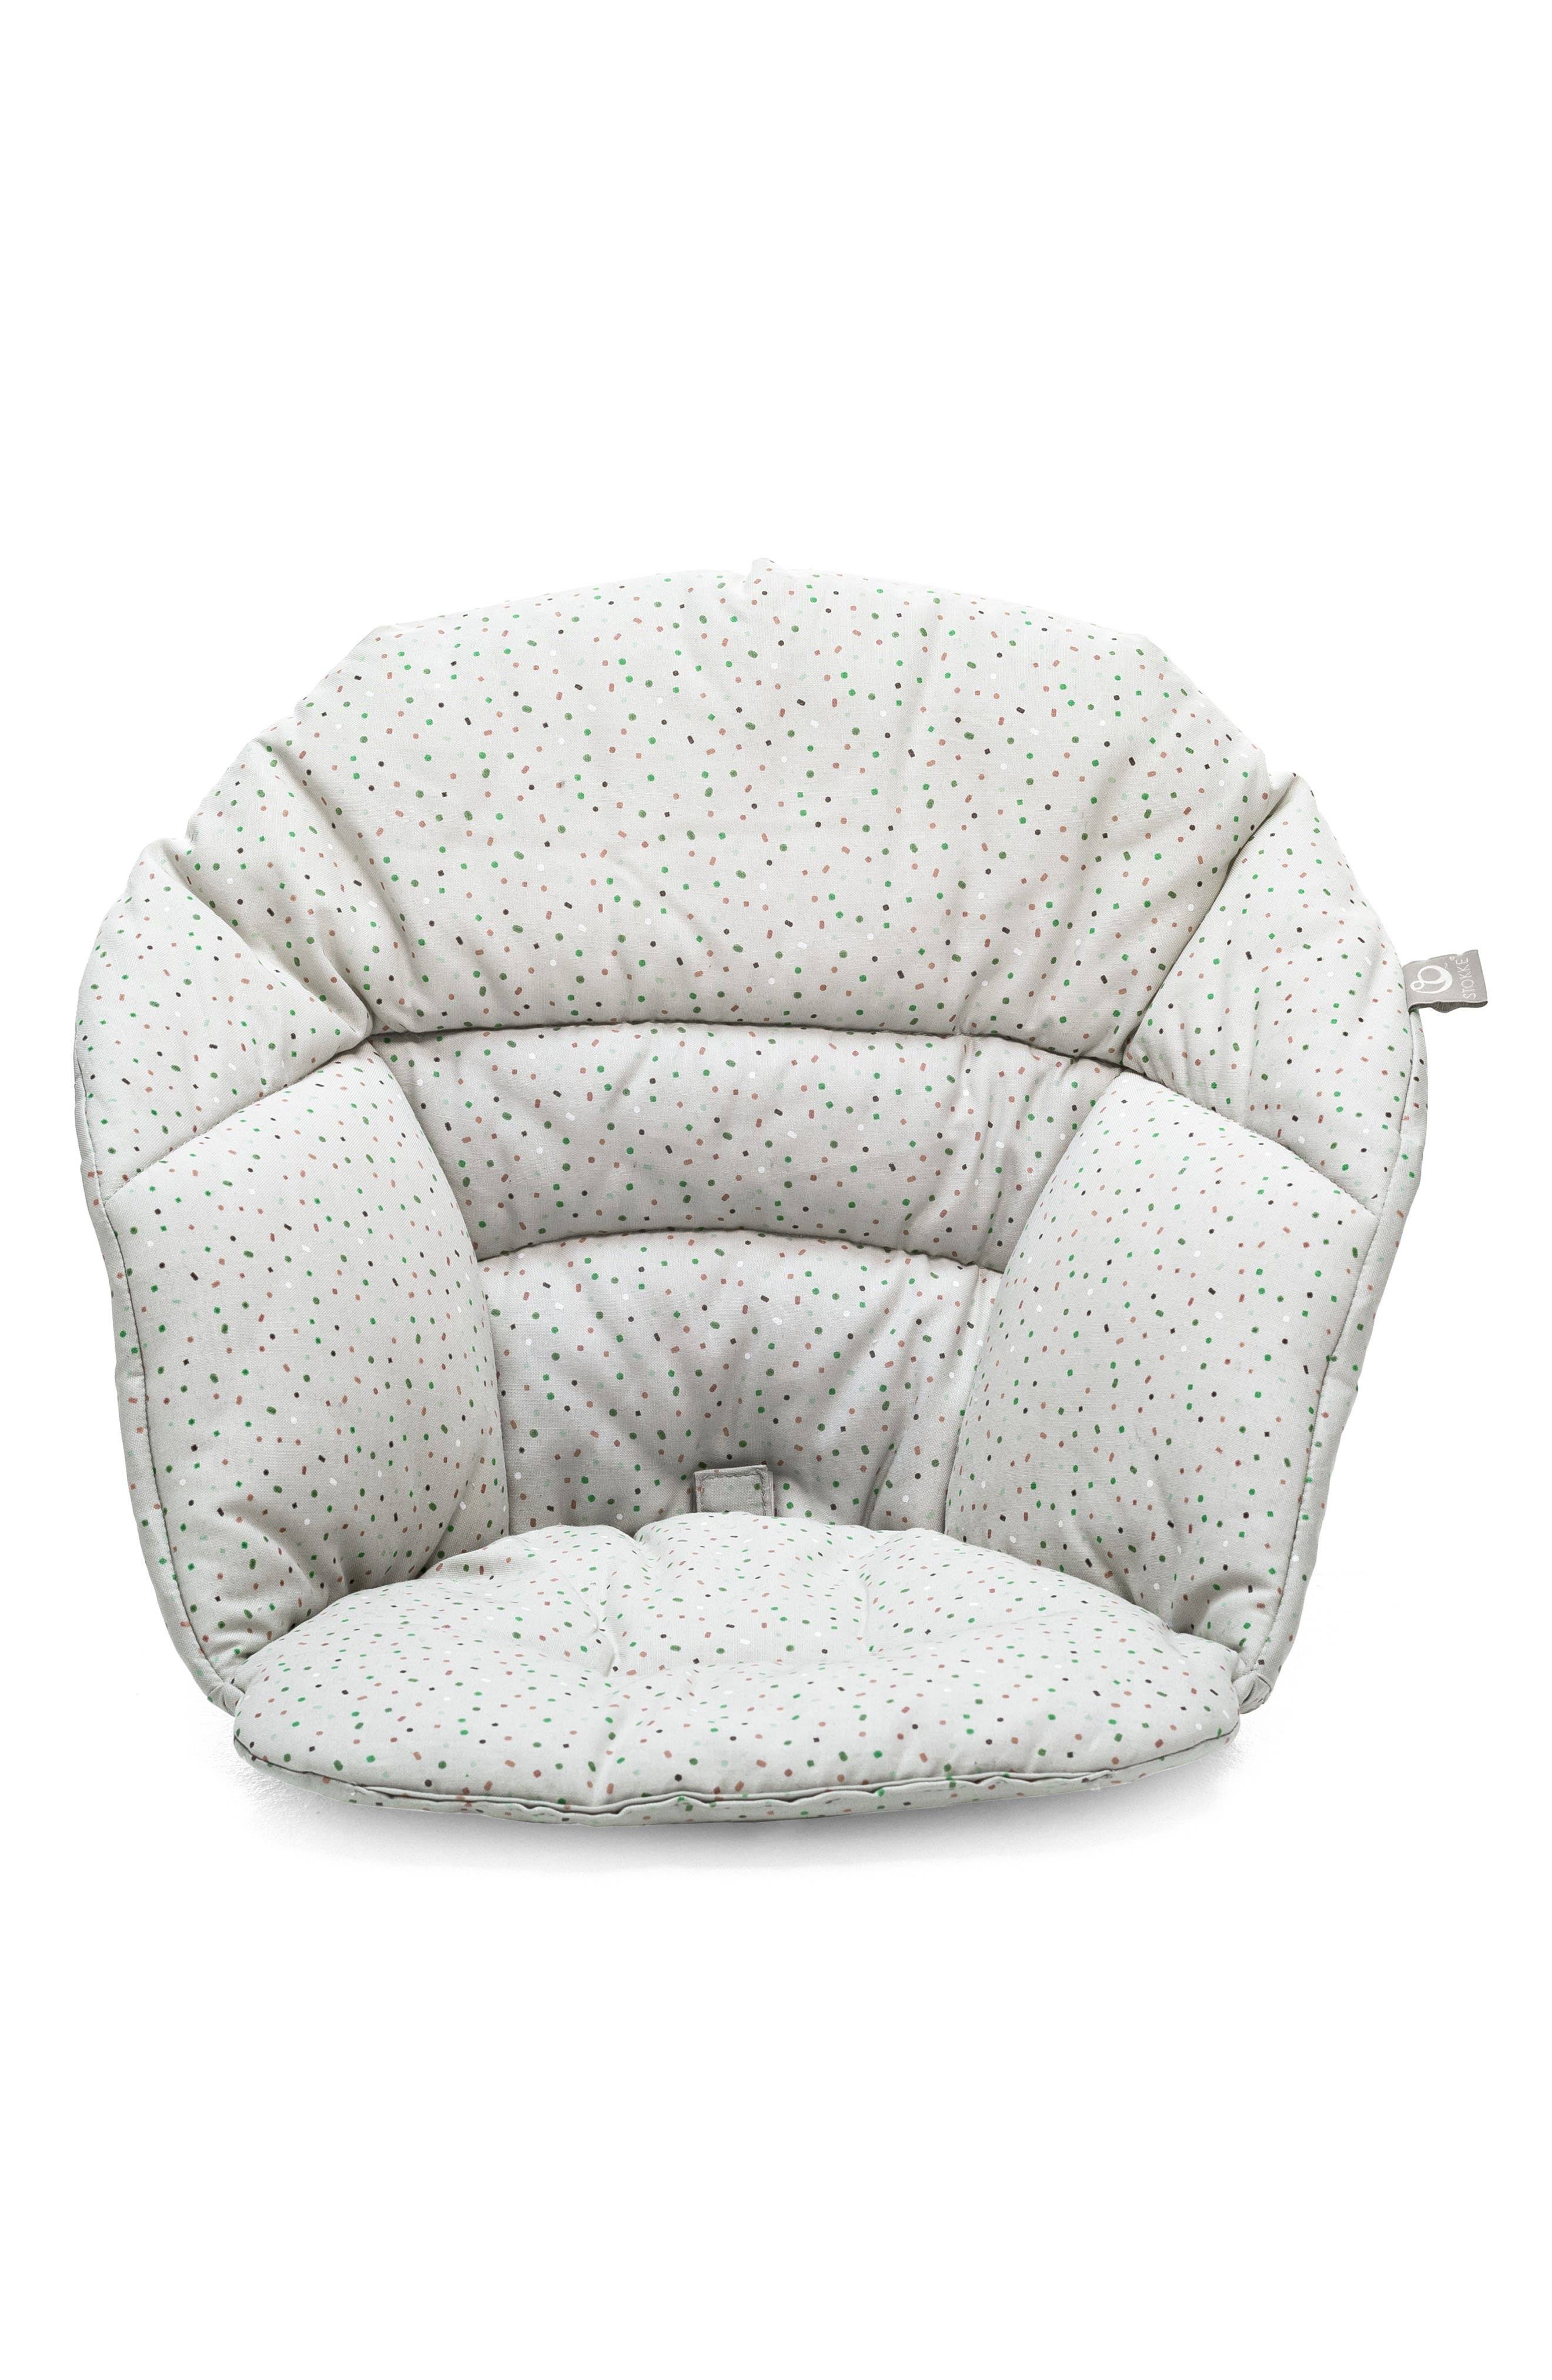 Stokke Clikk Cushion For Clikk Baby High Chair Grey Sprinkles